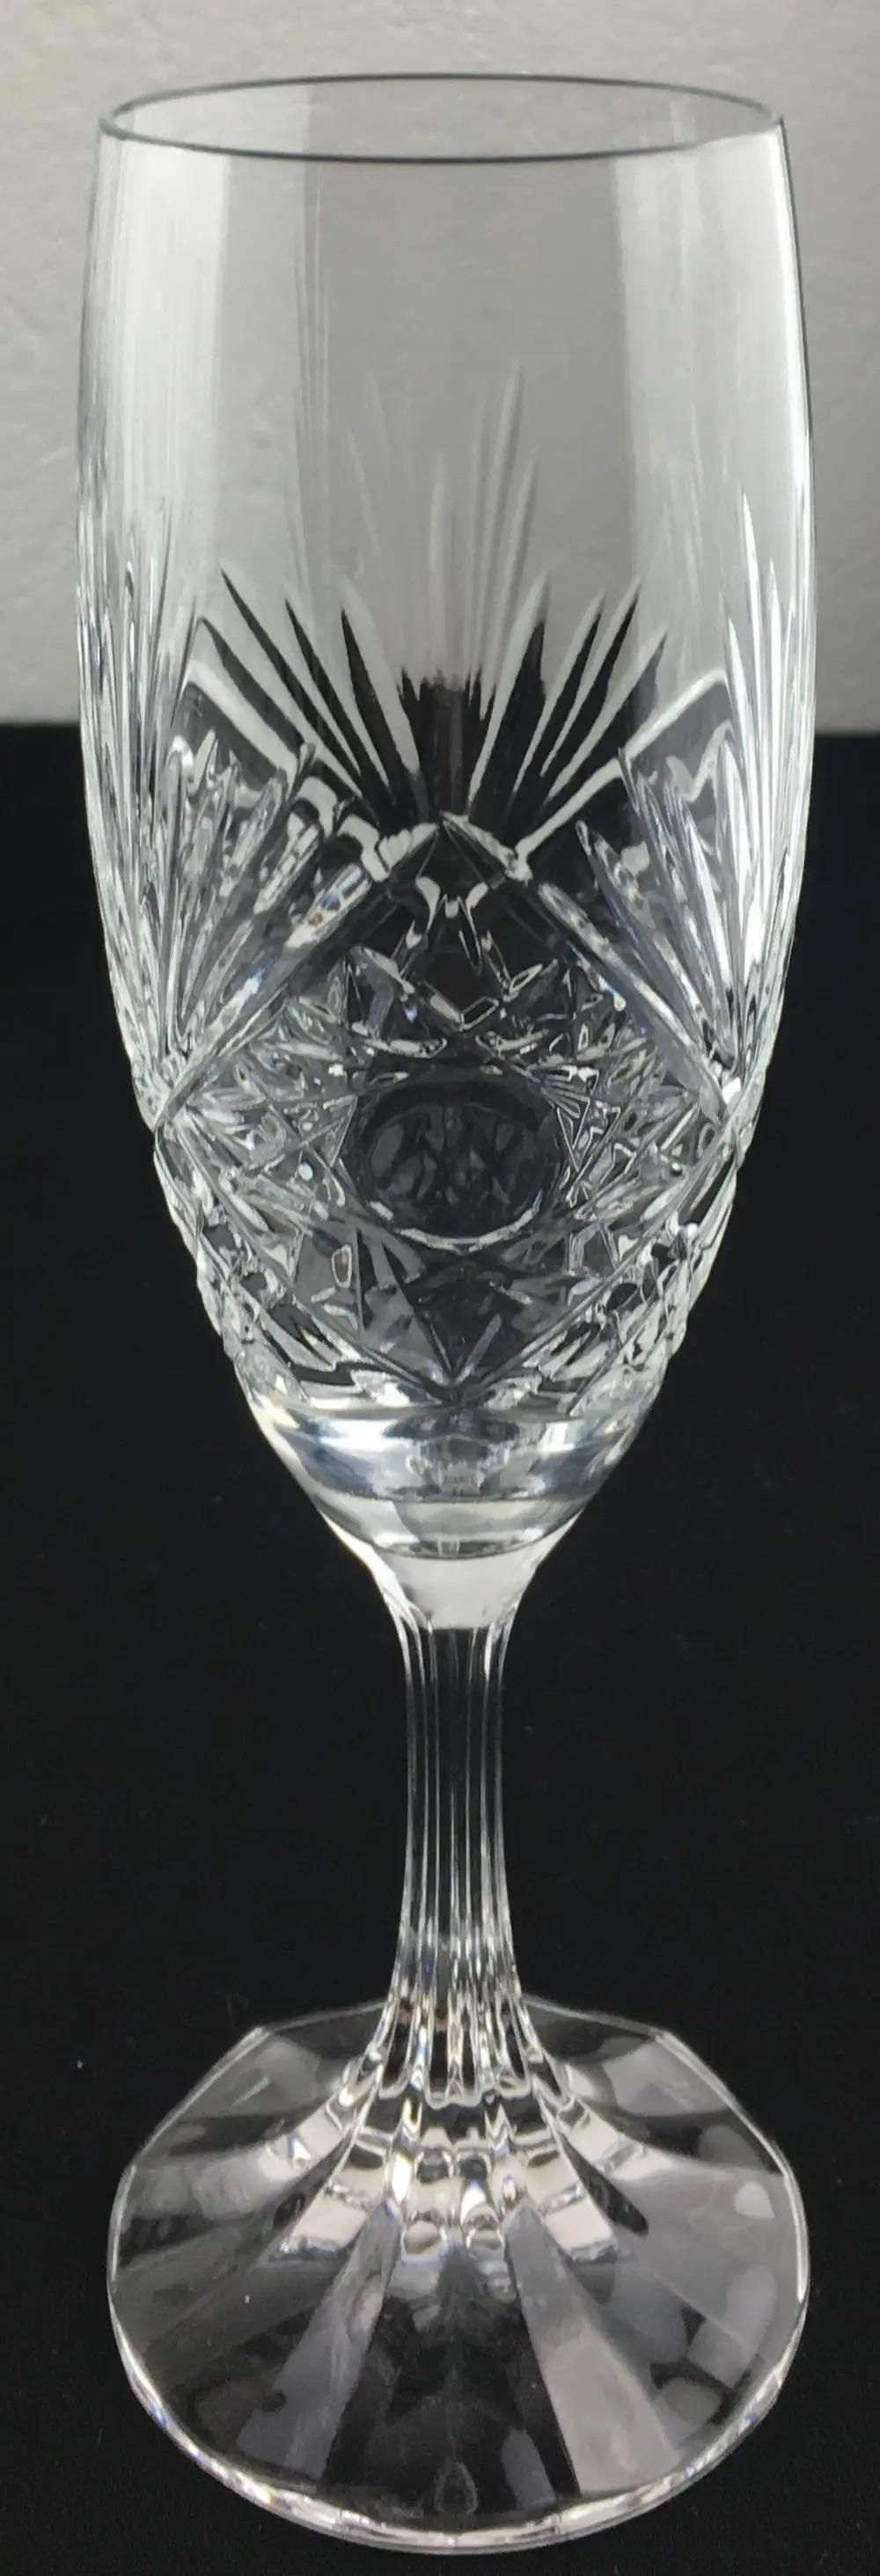 Un ensemble de 8 flûtes à champagne en cristal de Baccarat, d'une grande élégance et d'une grande qualité, encore disponible. Des détails magnifiques qui rehausseront n'importe quelle table et raviront vos invités. Conçu par Valery Klein.

Chaque